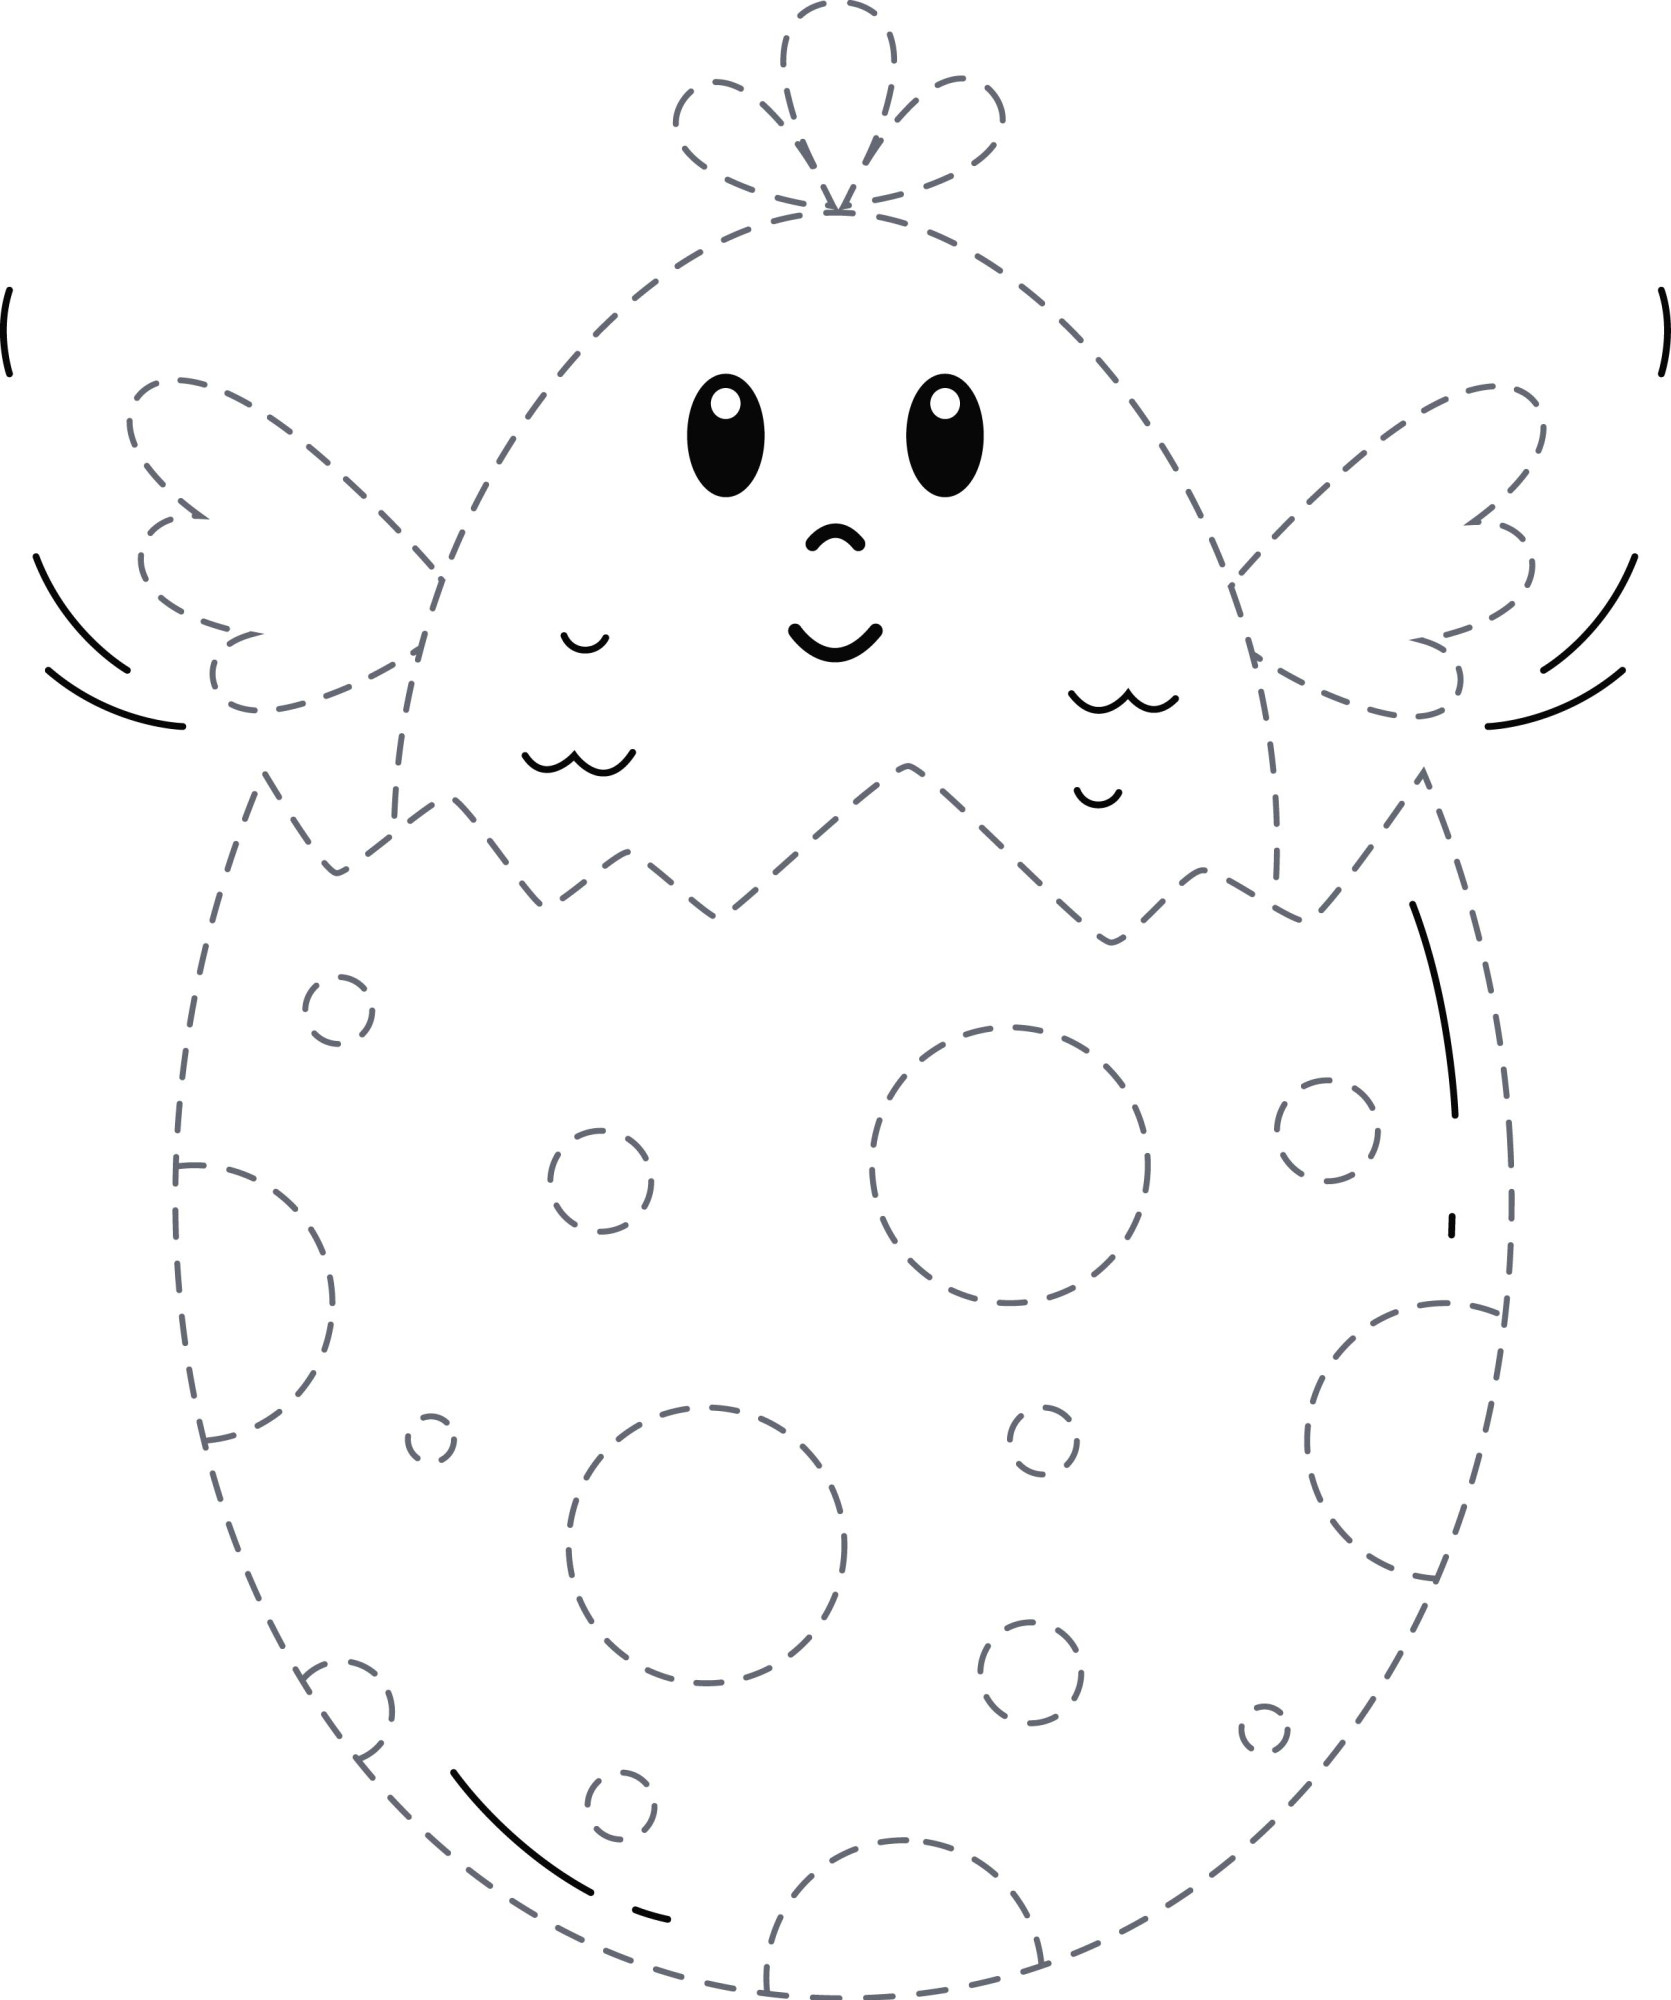 Раскраска для детей: цыплёнок вылупился из яйца по точкам